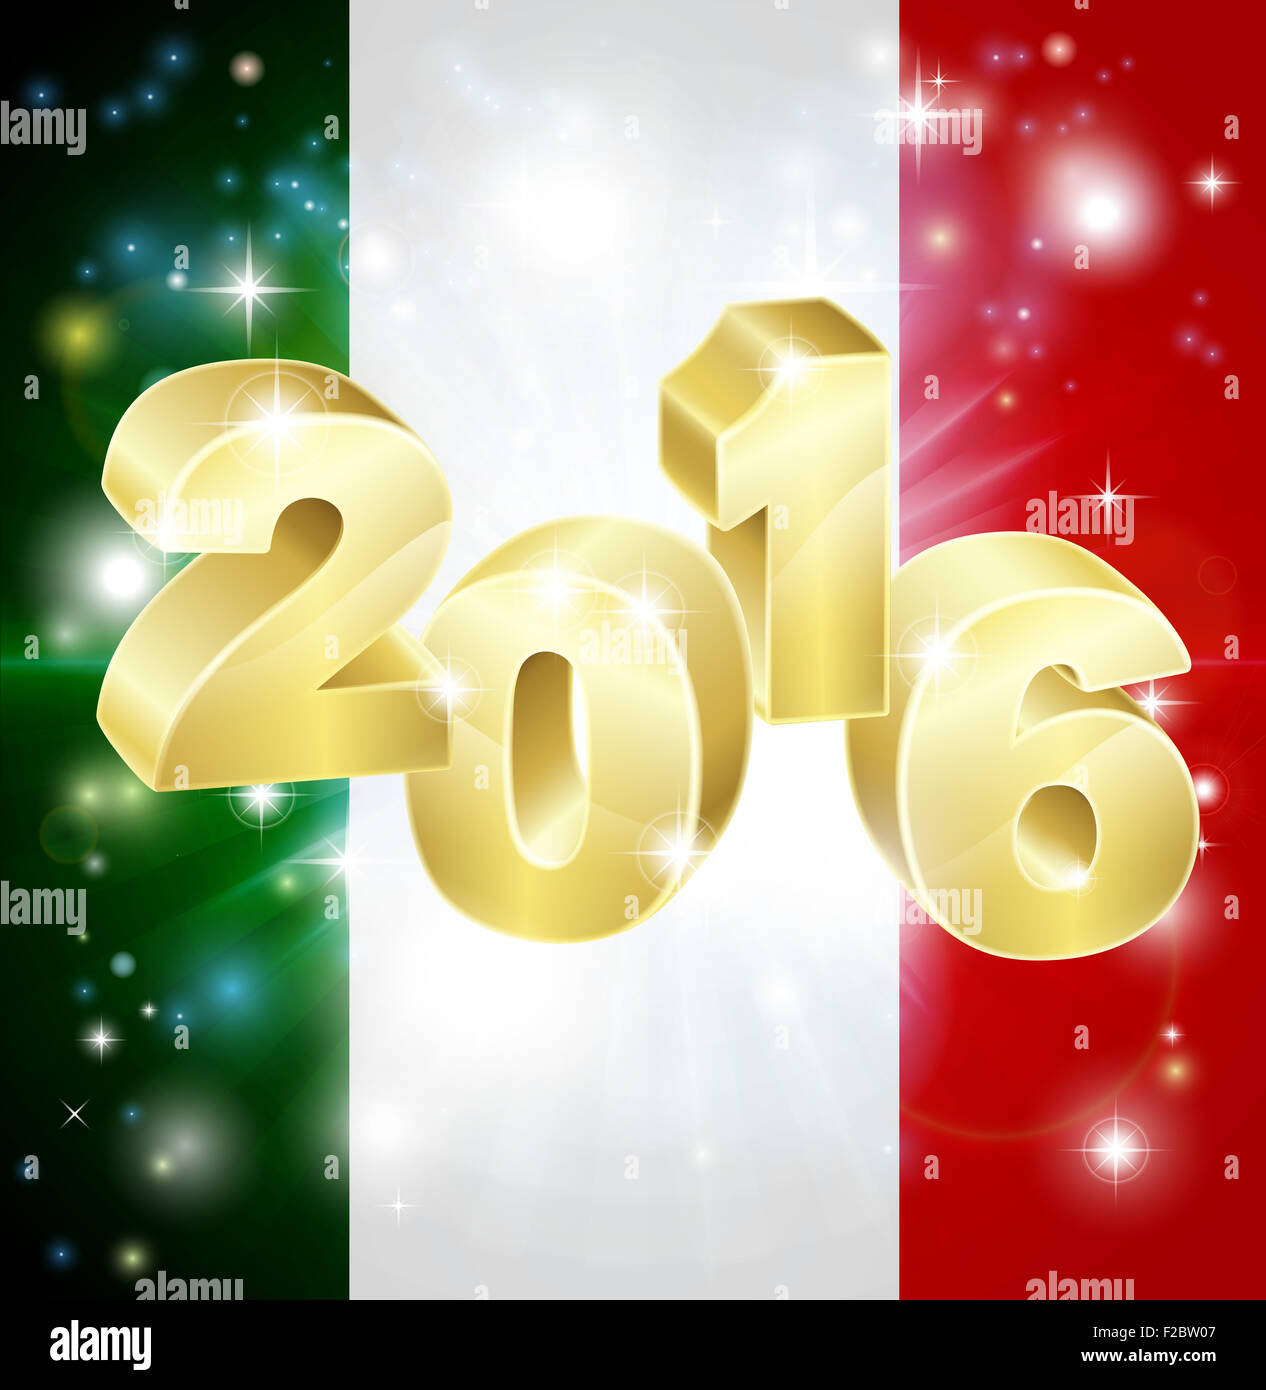 Un drapeau italien avec 2016 en sortir avec Fireworks. Concept pour la nouvelle année ou quoi que ce soit excitant passe en Italie dans l'axe y Banque D'Images